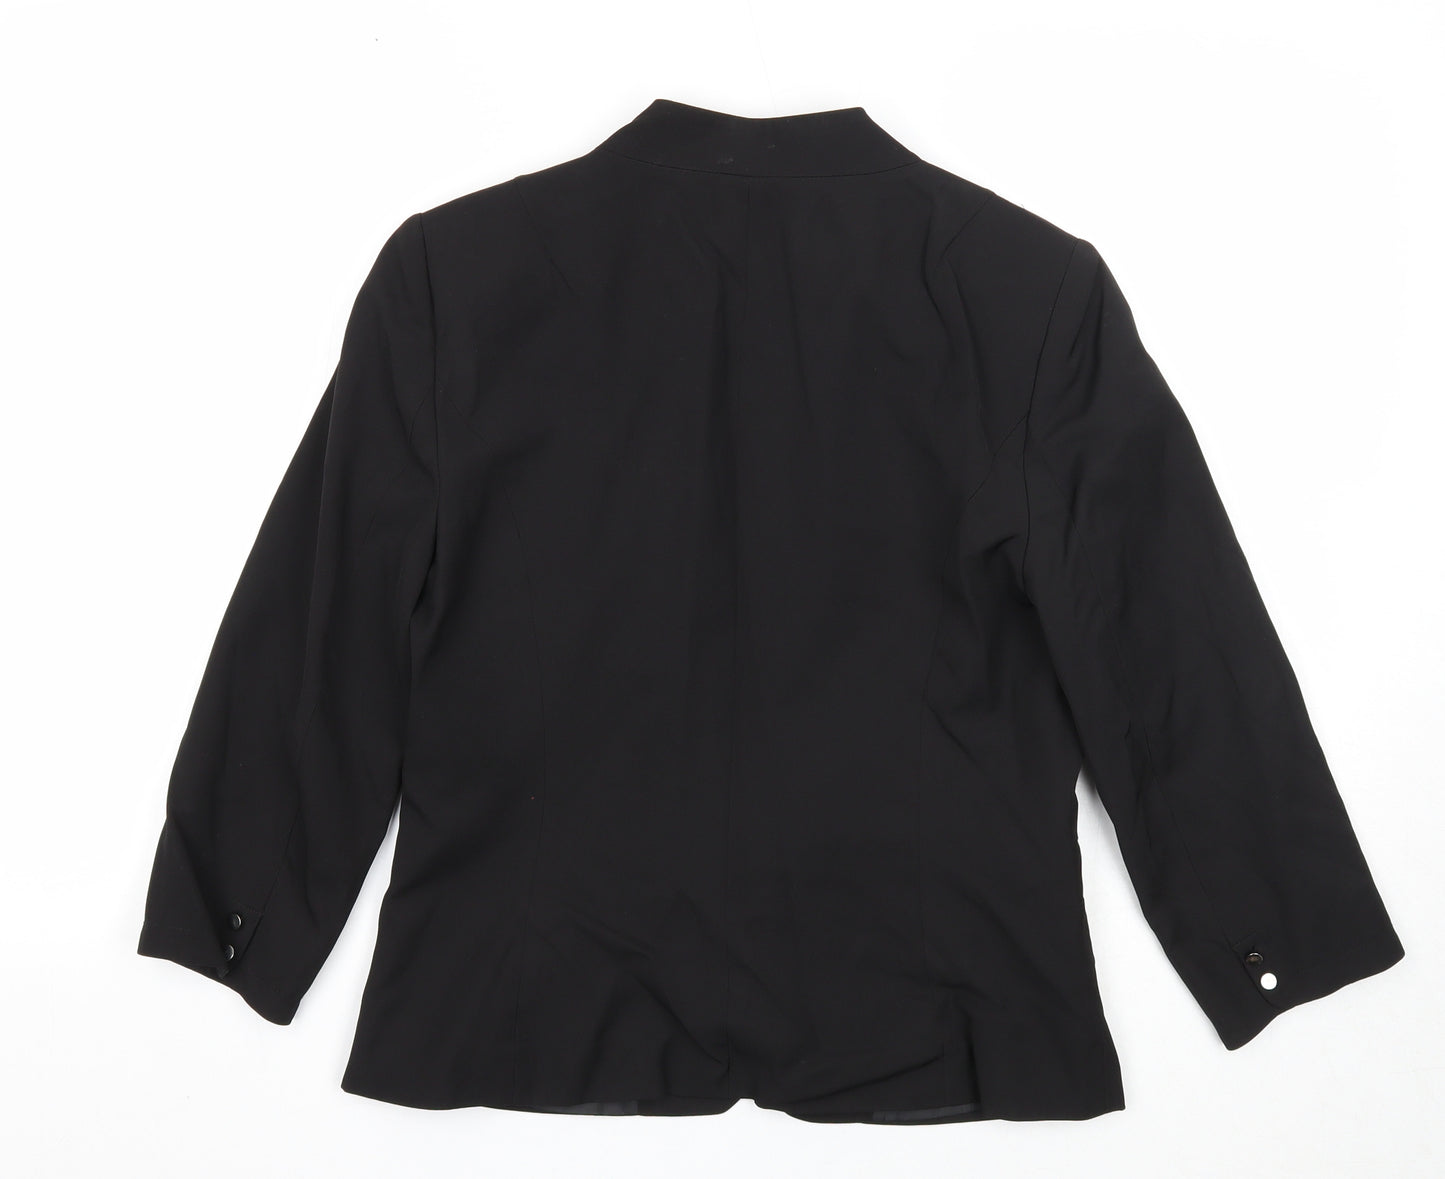 NAF NAF Womens Black Jacket Blazer Size 12